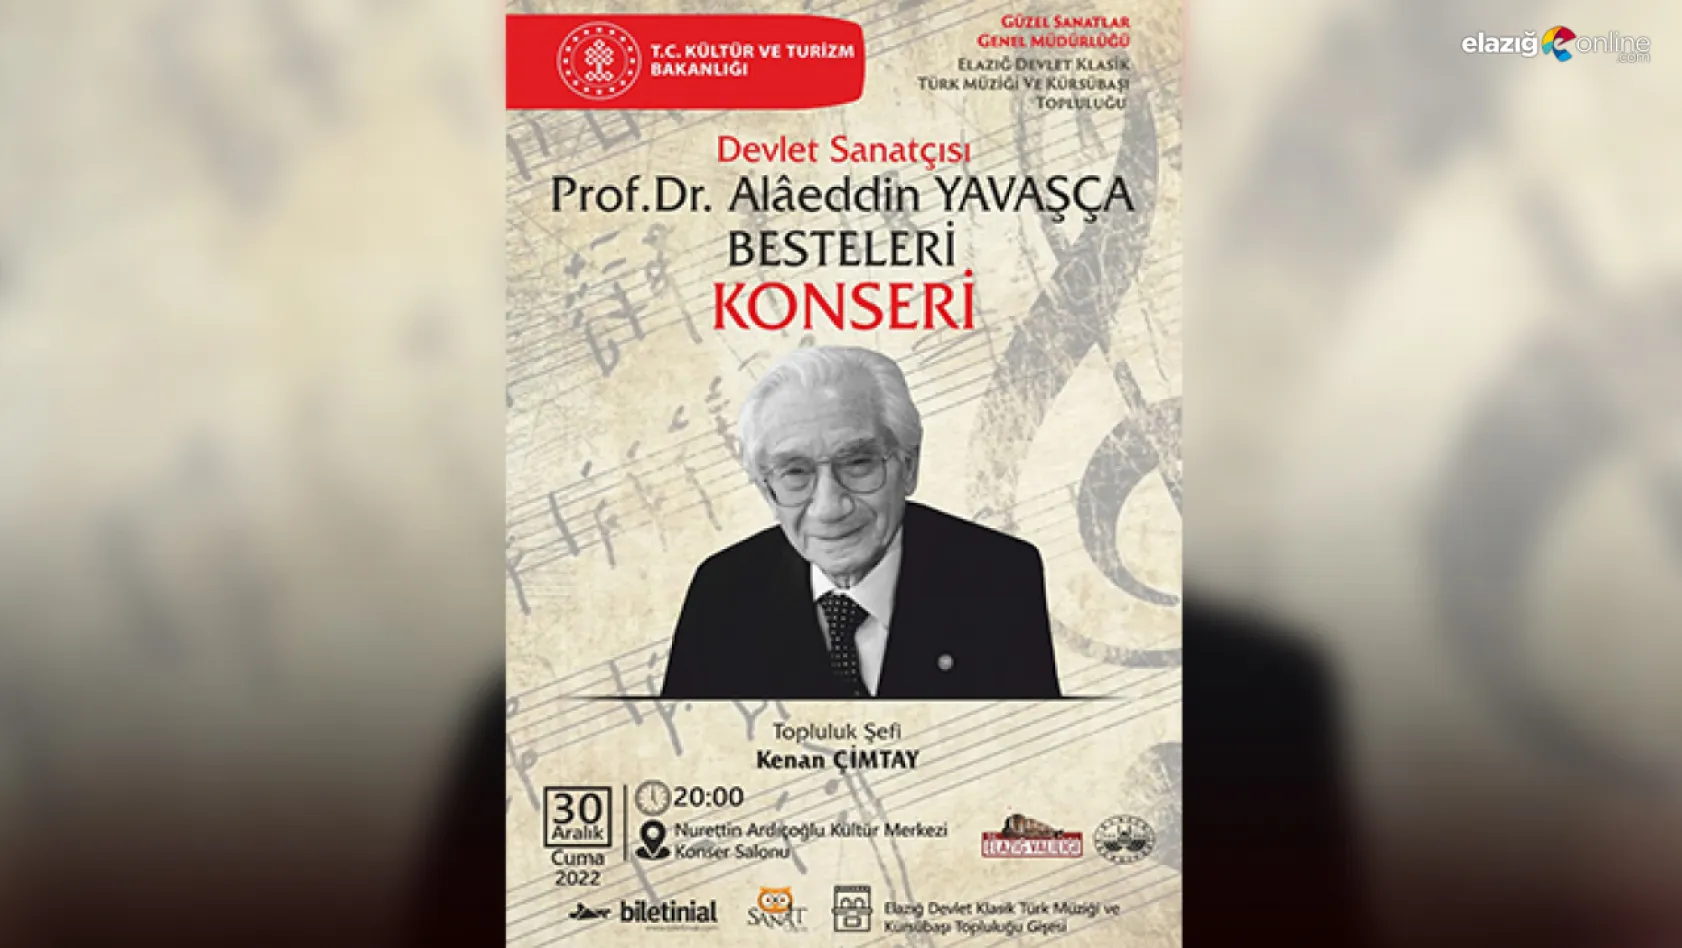 Devlet Sanatçısı Prof. Dr. Alaeddin Yavaşça Elazığ'da anılacak!